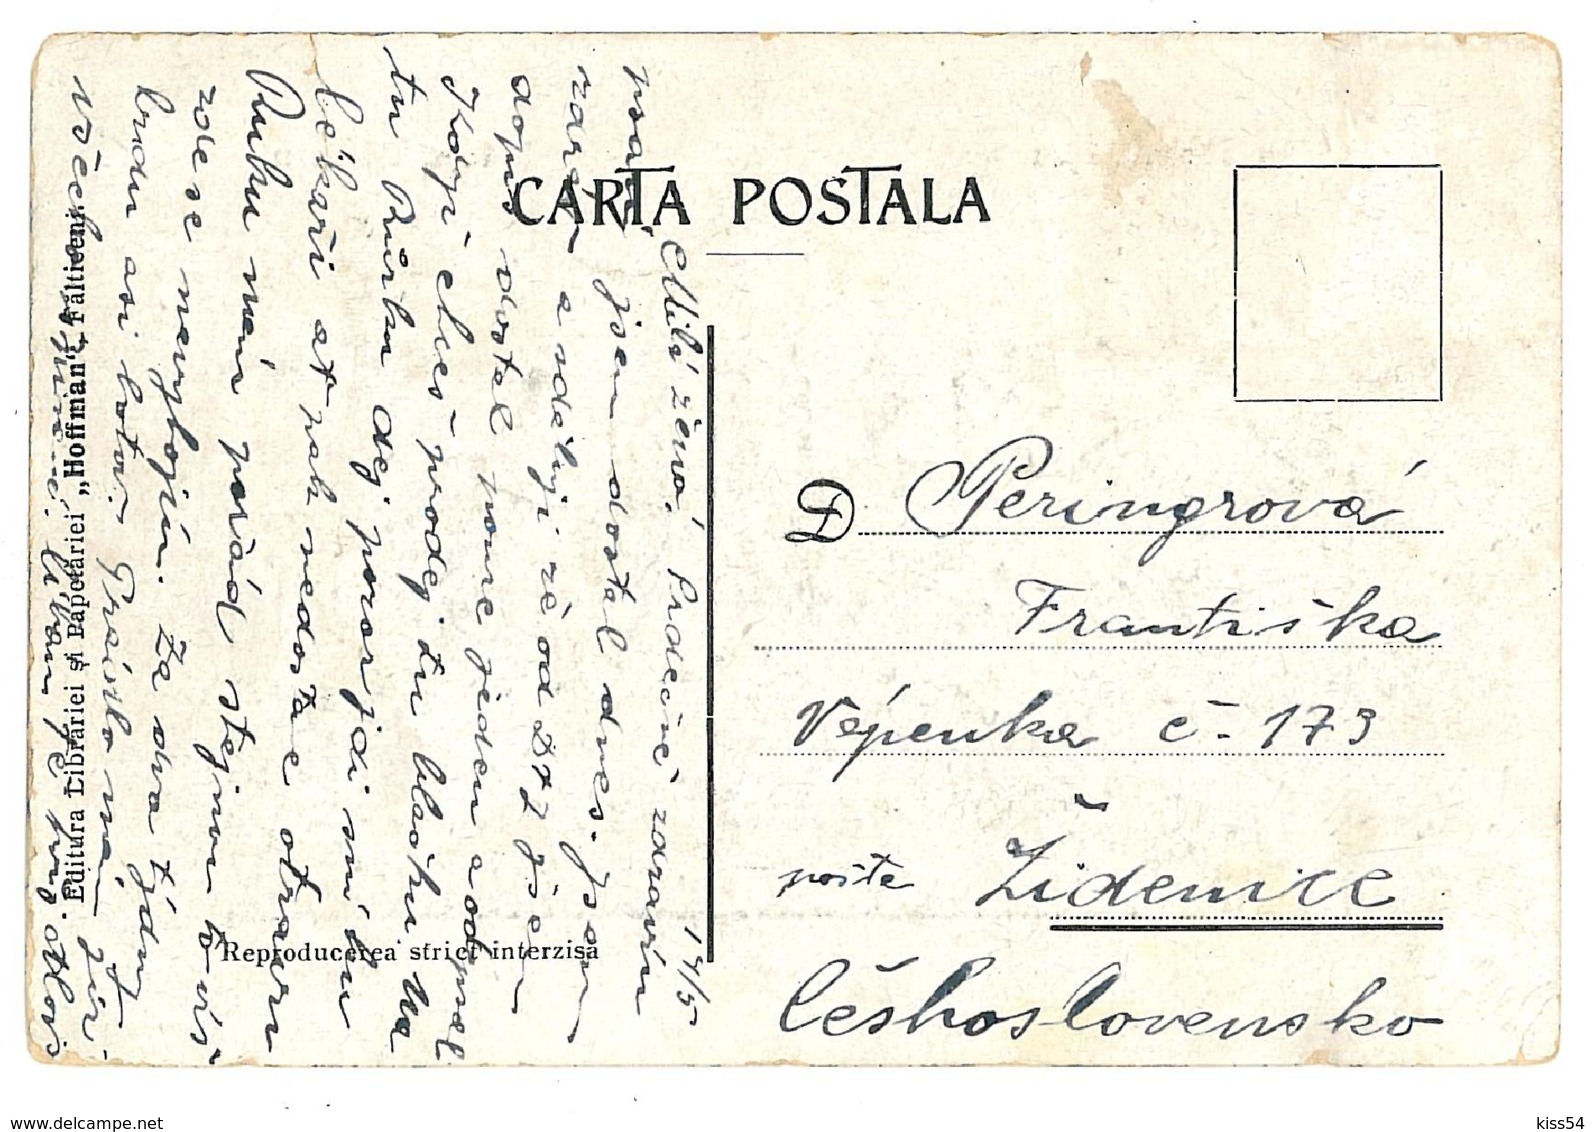 RO 63 - 9599 RASCA, Jud Falticeni, Bukowina, Romania - Old Postcard - Used - 1915 - Roumanie